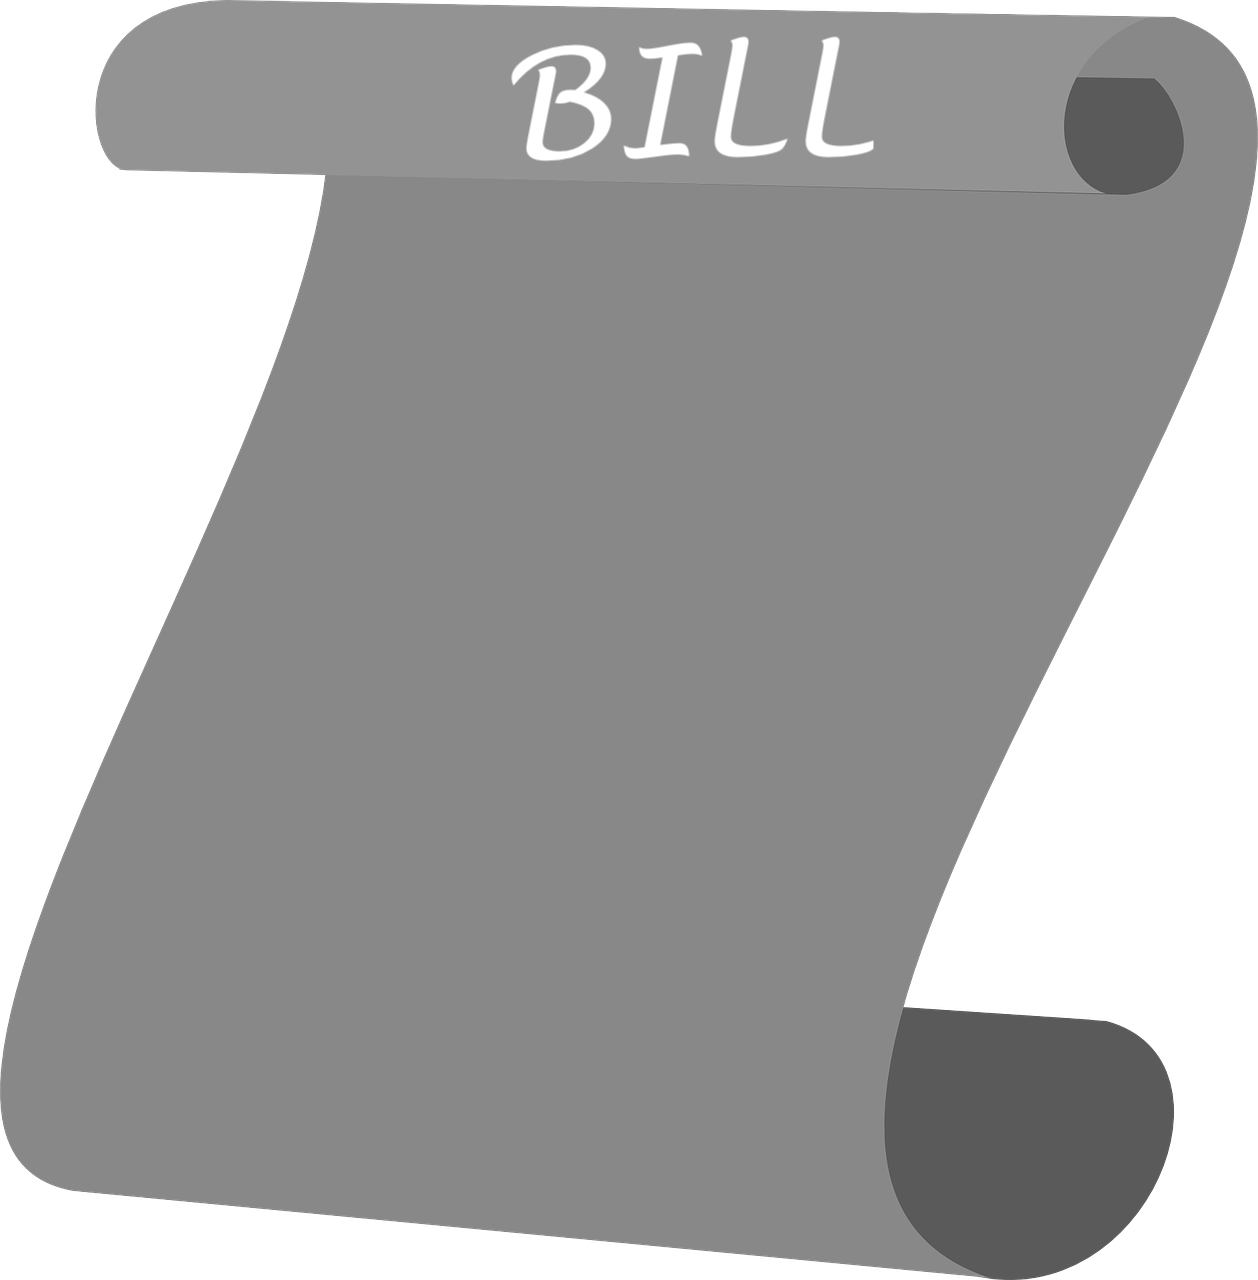 Just a bill